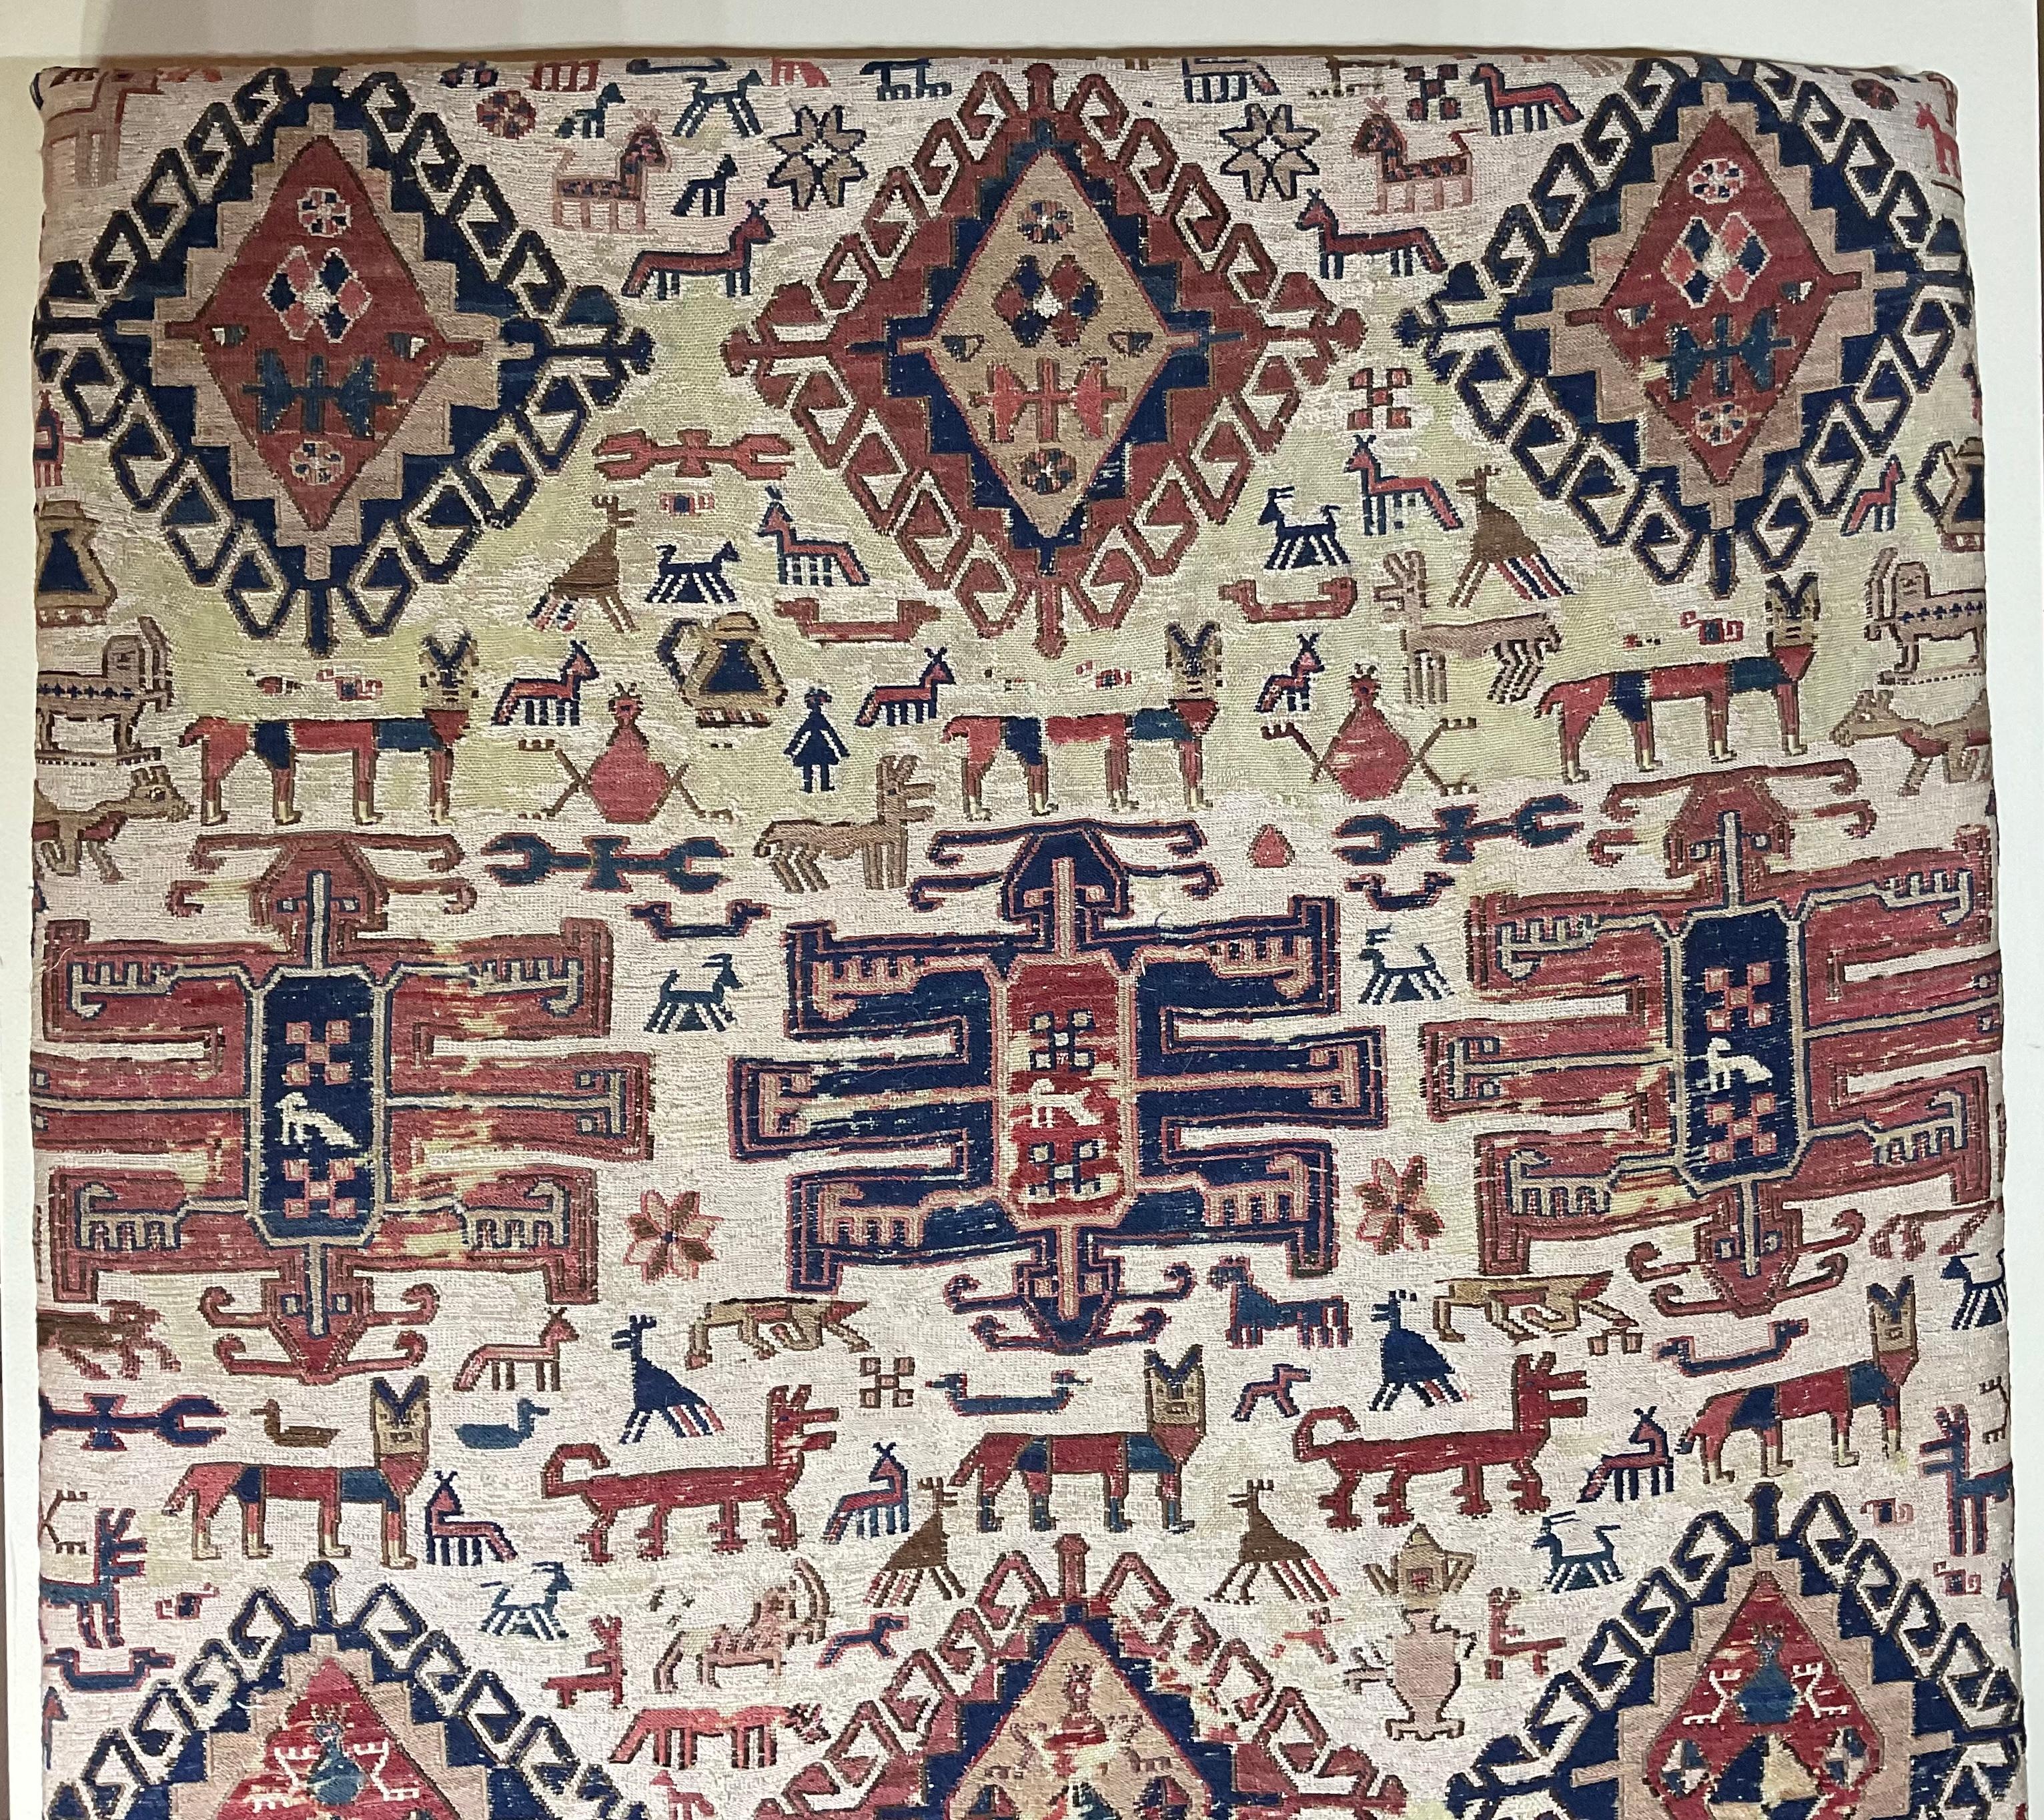 Tapis noué à la main en laine et soie, originaire d'Azerbaïdjan vers 1920-1930, motif dense de divers motifs tribaux exceptionnels, dans de belles couleurs sourdes. Ce tapis a été nettoyé par un professionnel et présenté sur une base en bois